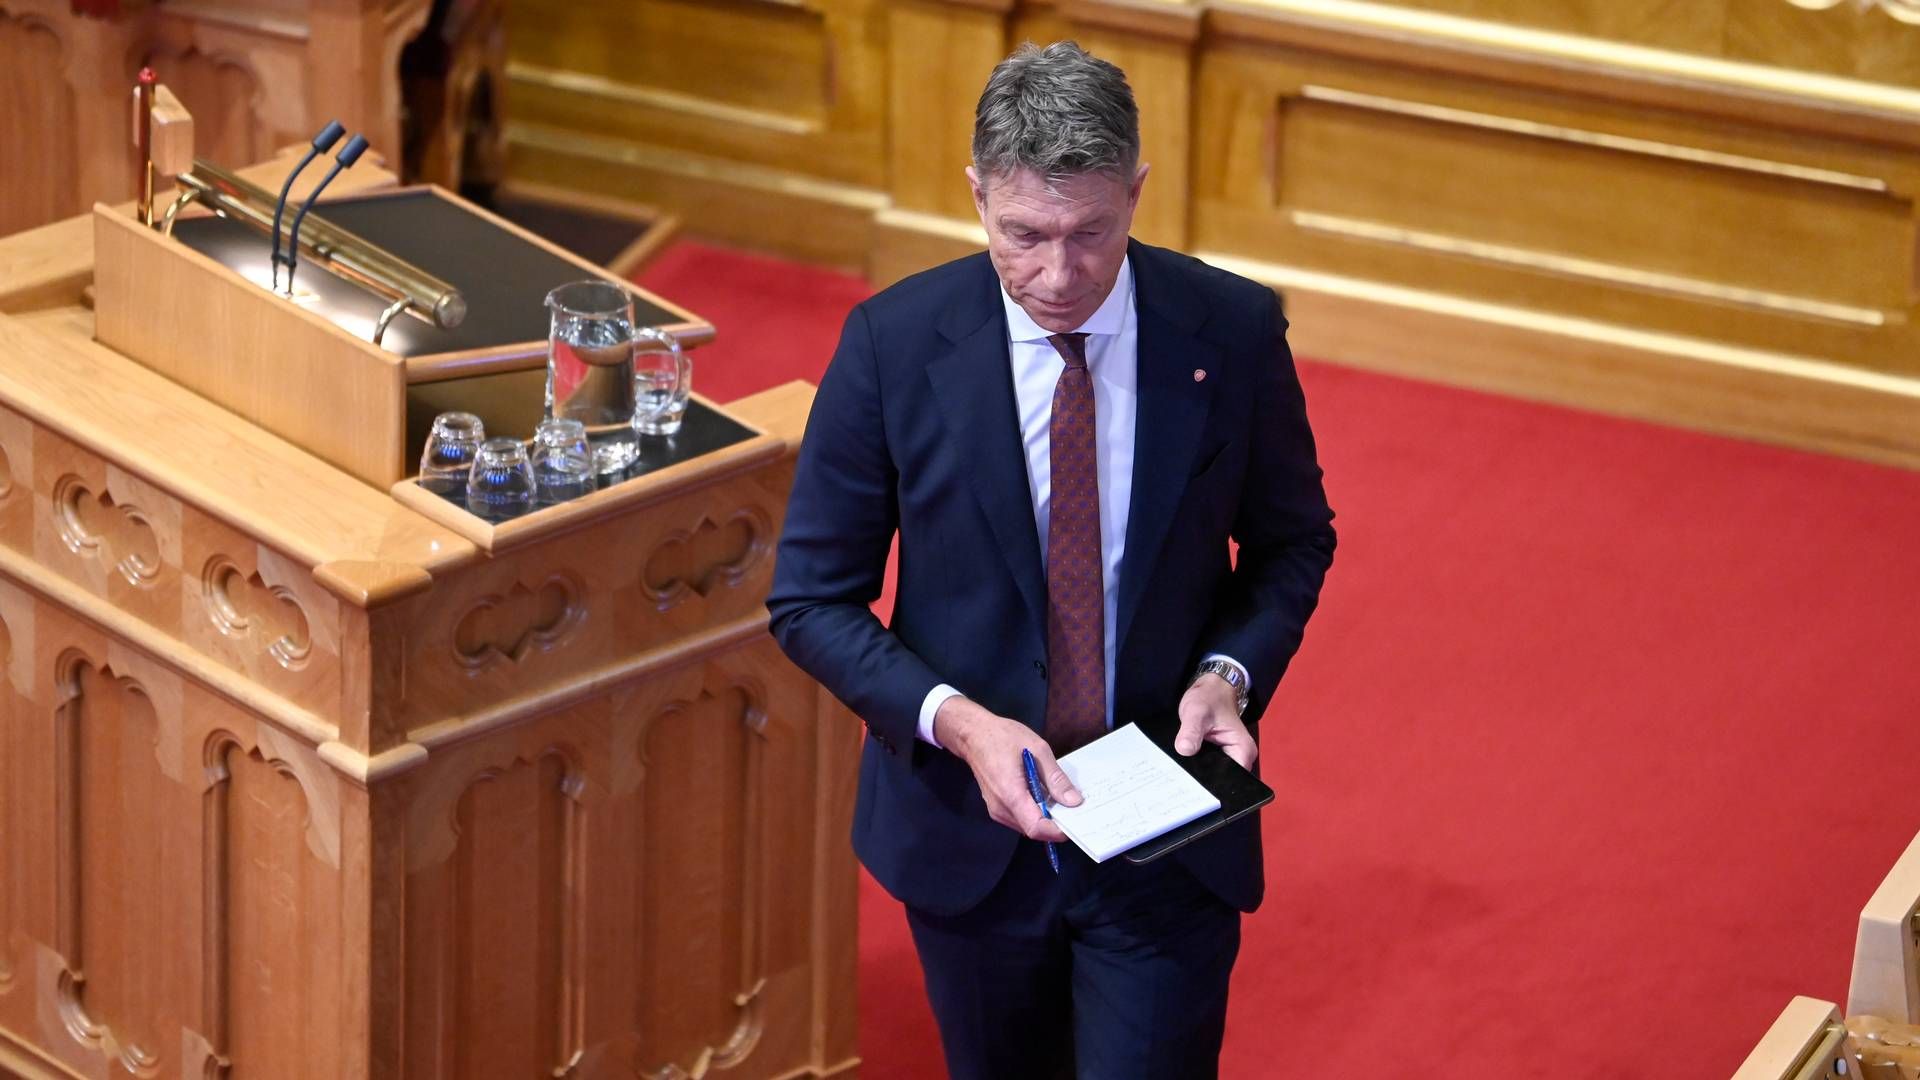 HAR SVART OPPOSISJONEN: Olje- og energiminister Terje Aasland blir utfordret av Rødt og SV om Fosen-saken. | Foto: Annika Byrde / NTB